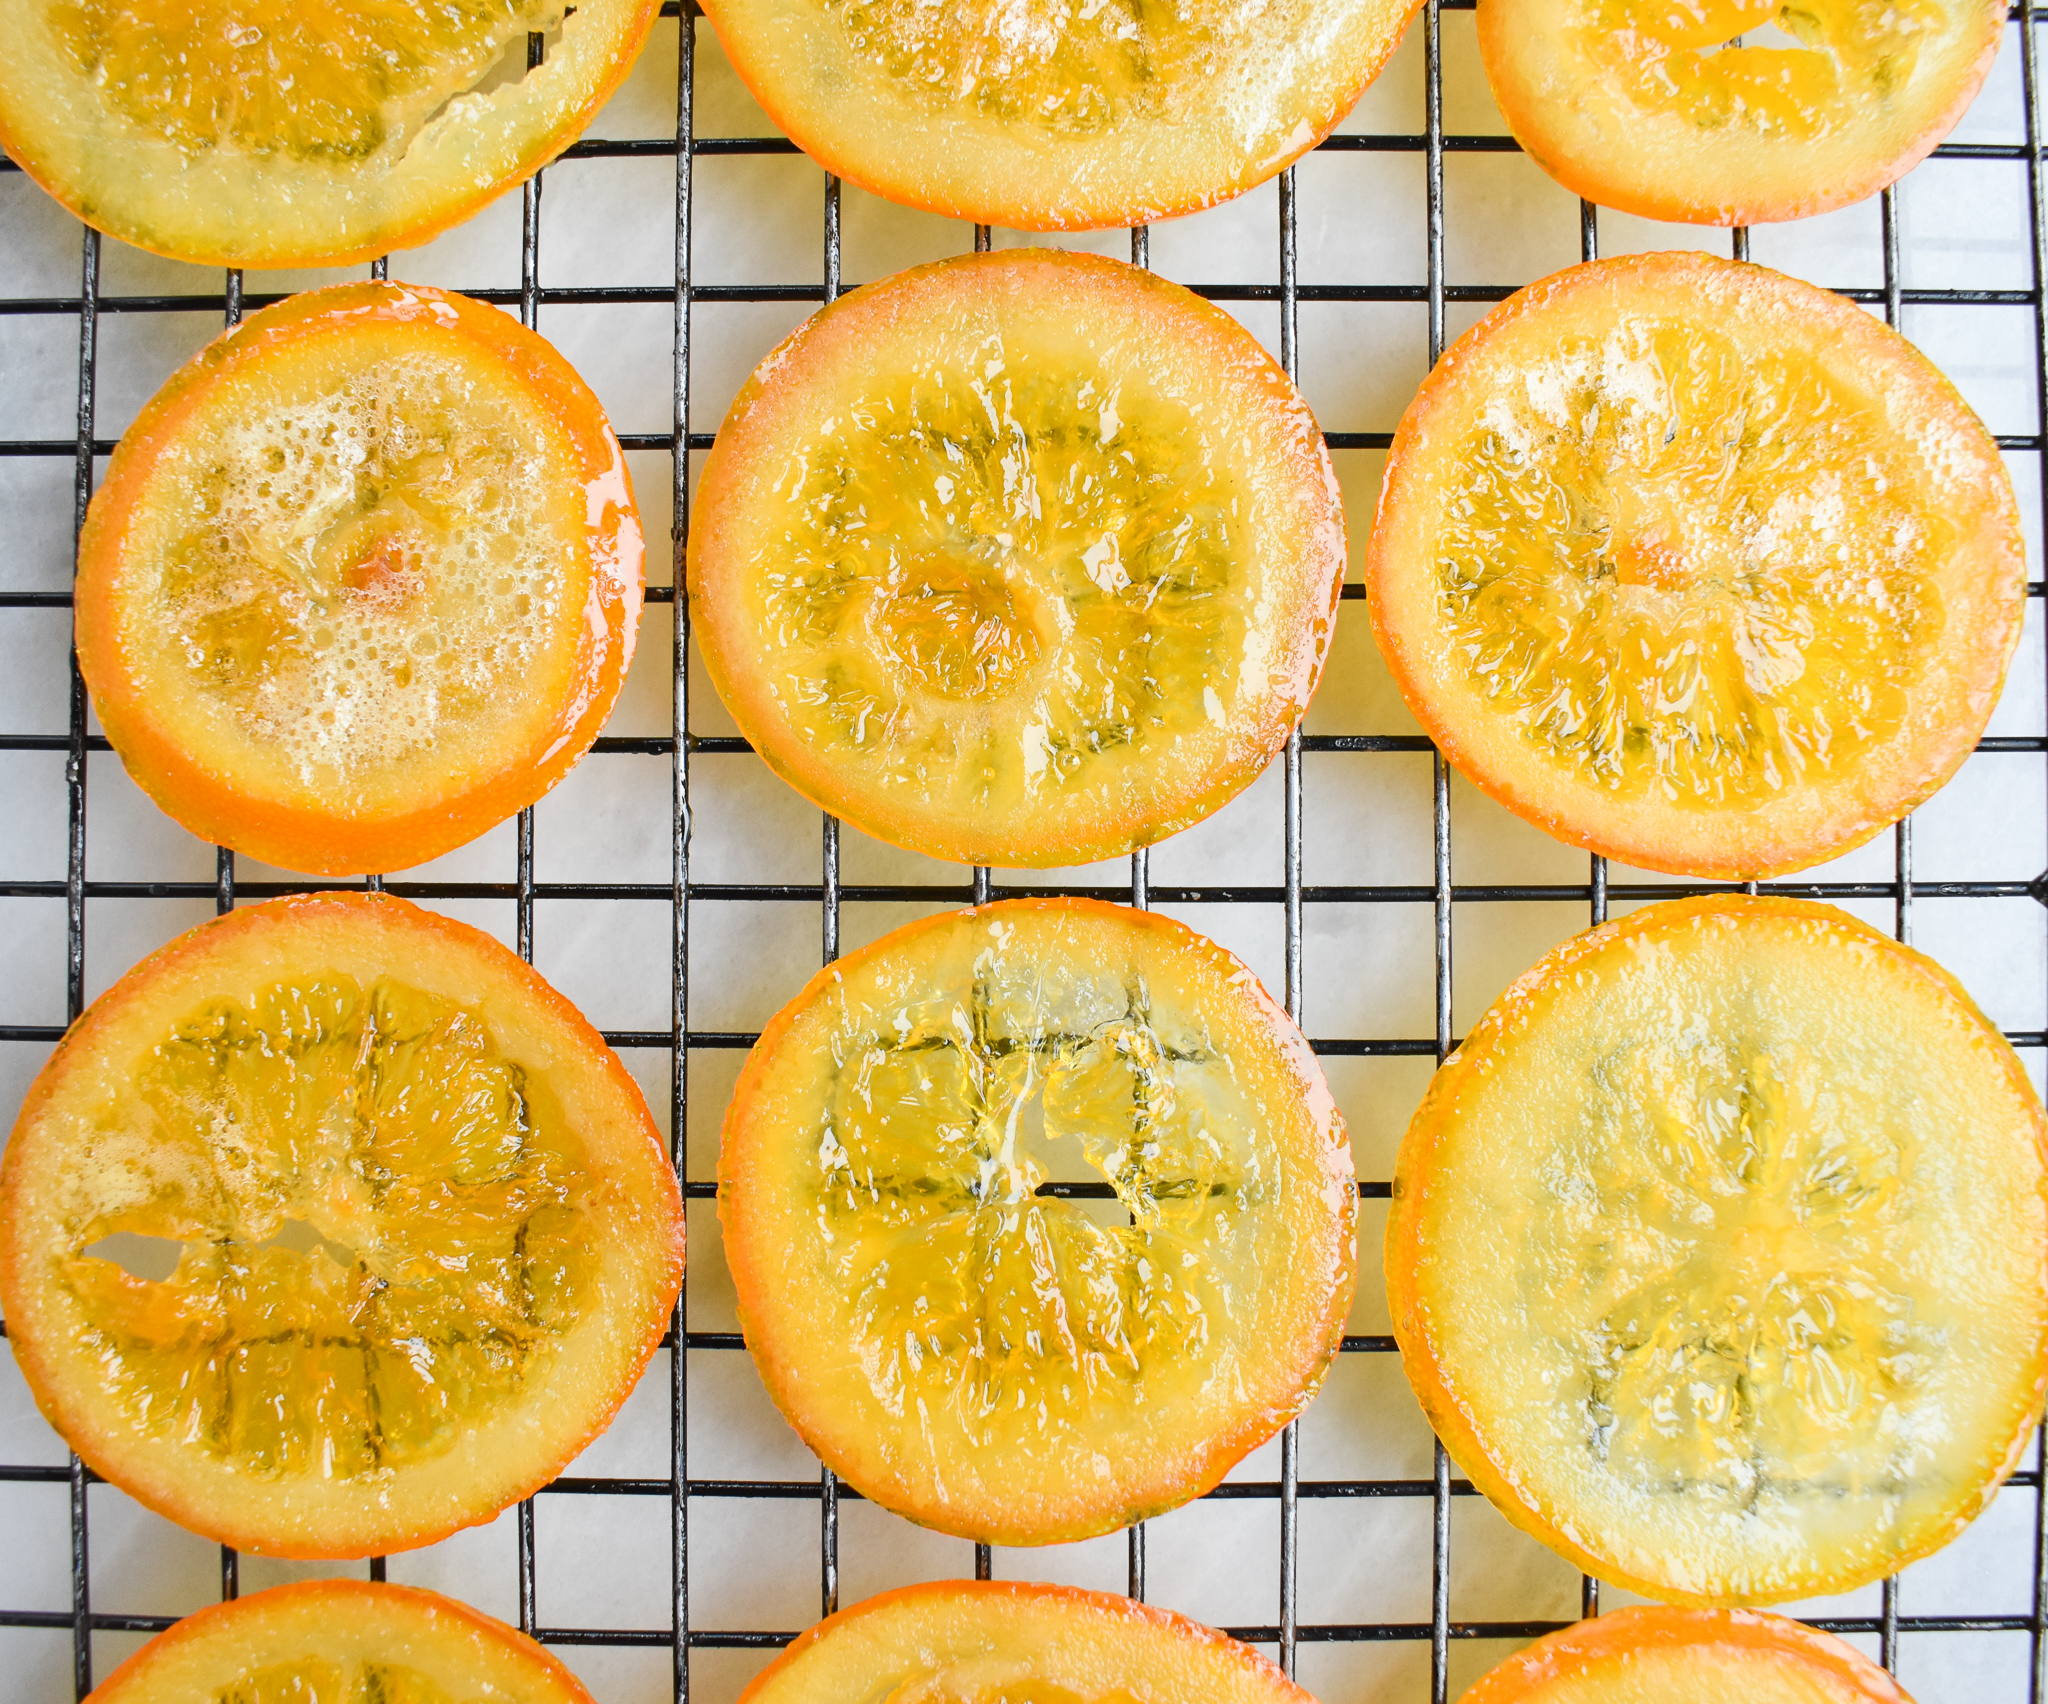 Low-FODMAP Three Ingredient Candied Orange Slices Recipe; Gluten-free,  Vegan